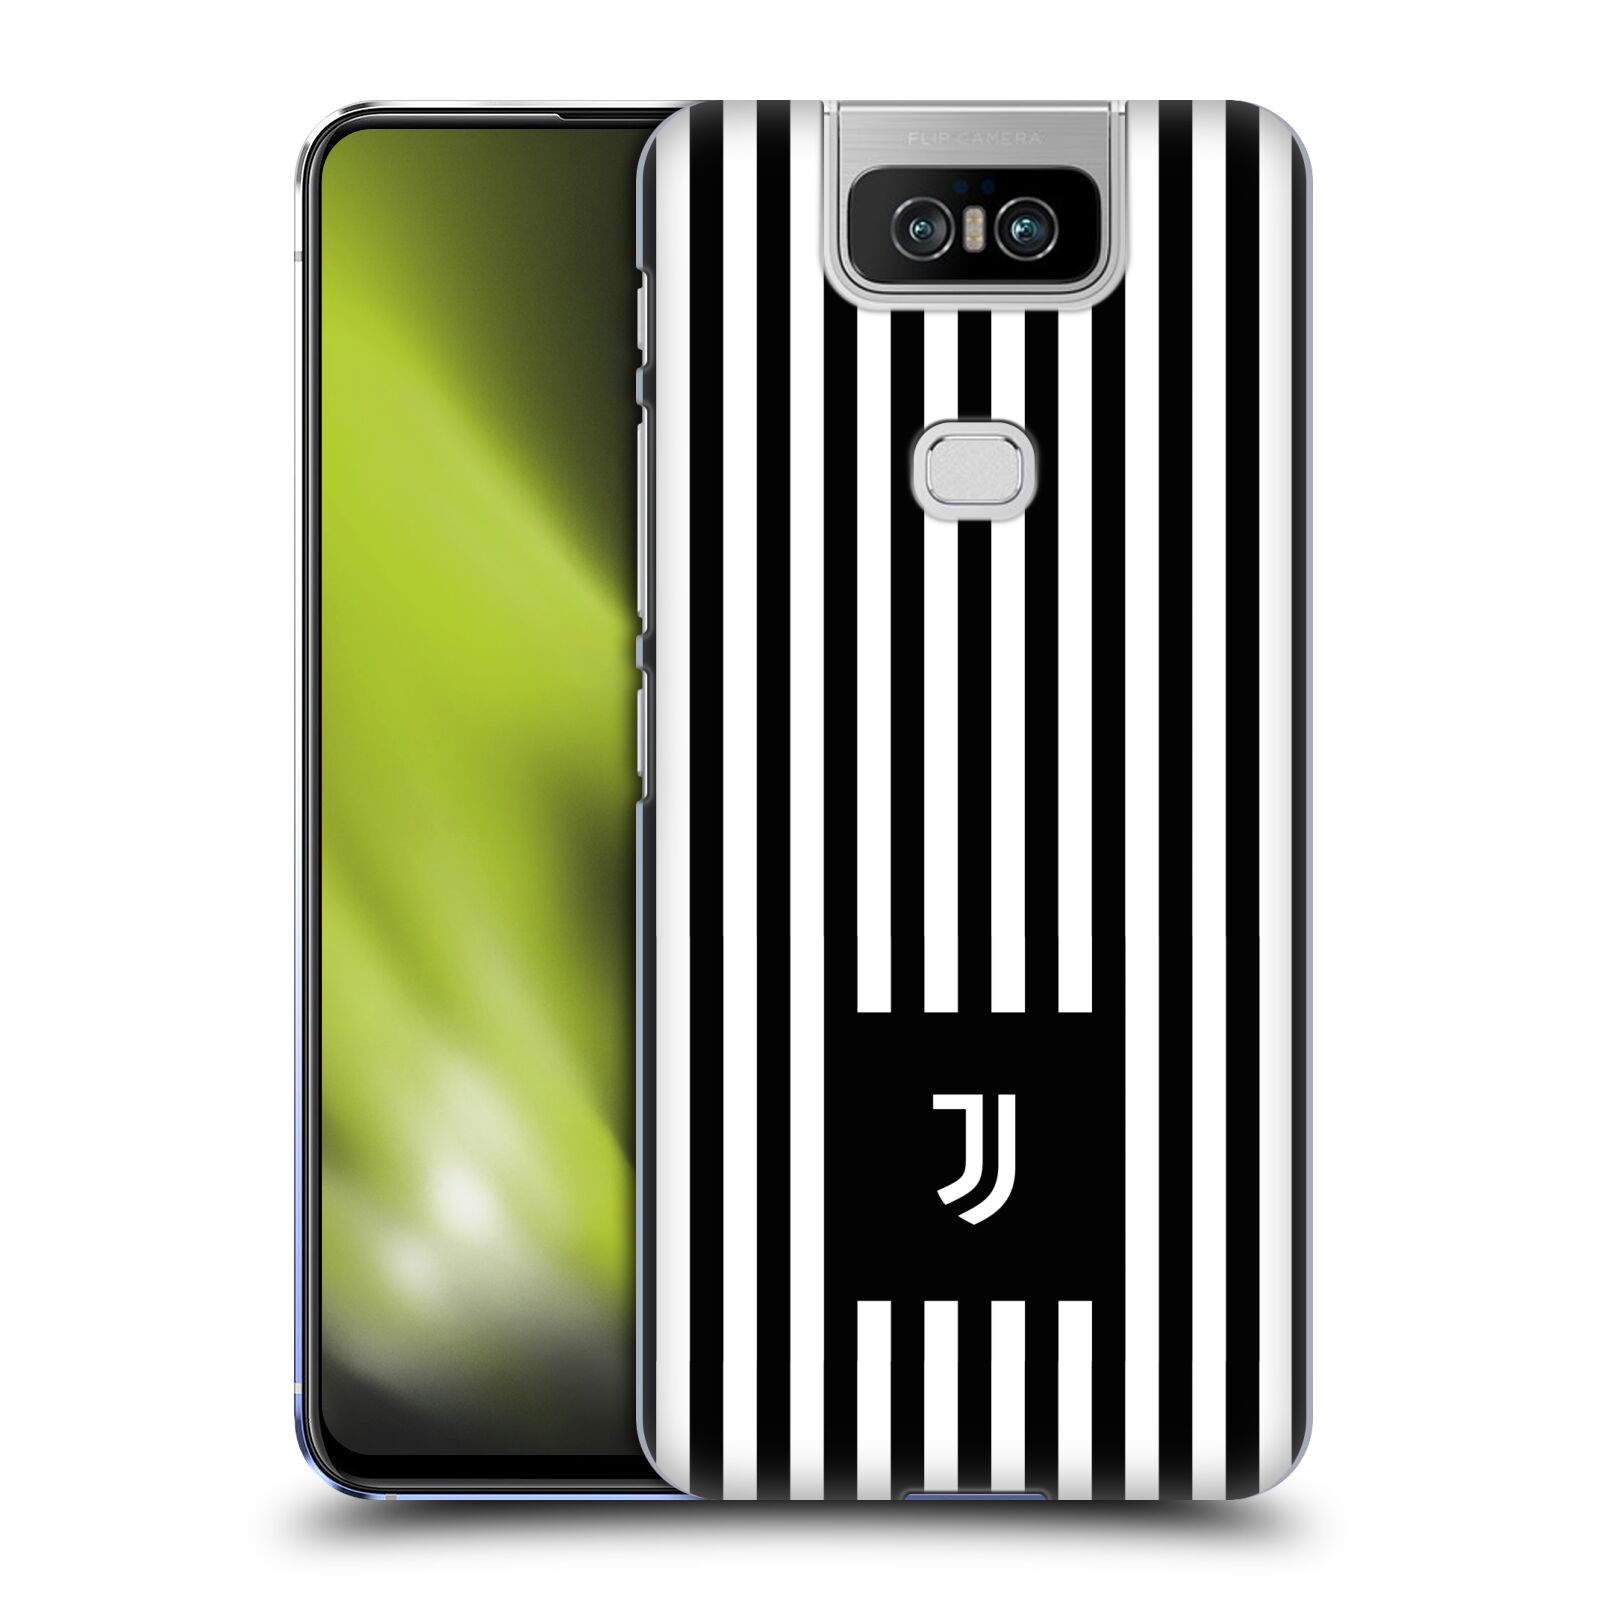 Pouzdro na mobil Asus Zenfone 6 ZS630KL - HEAD CASE - Fotbalový klub Juventus FC černobílé pruhy znak